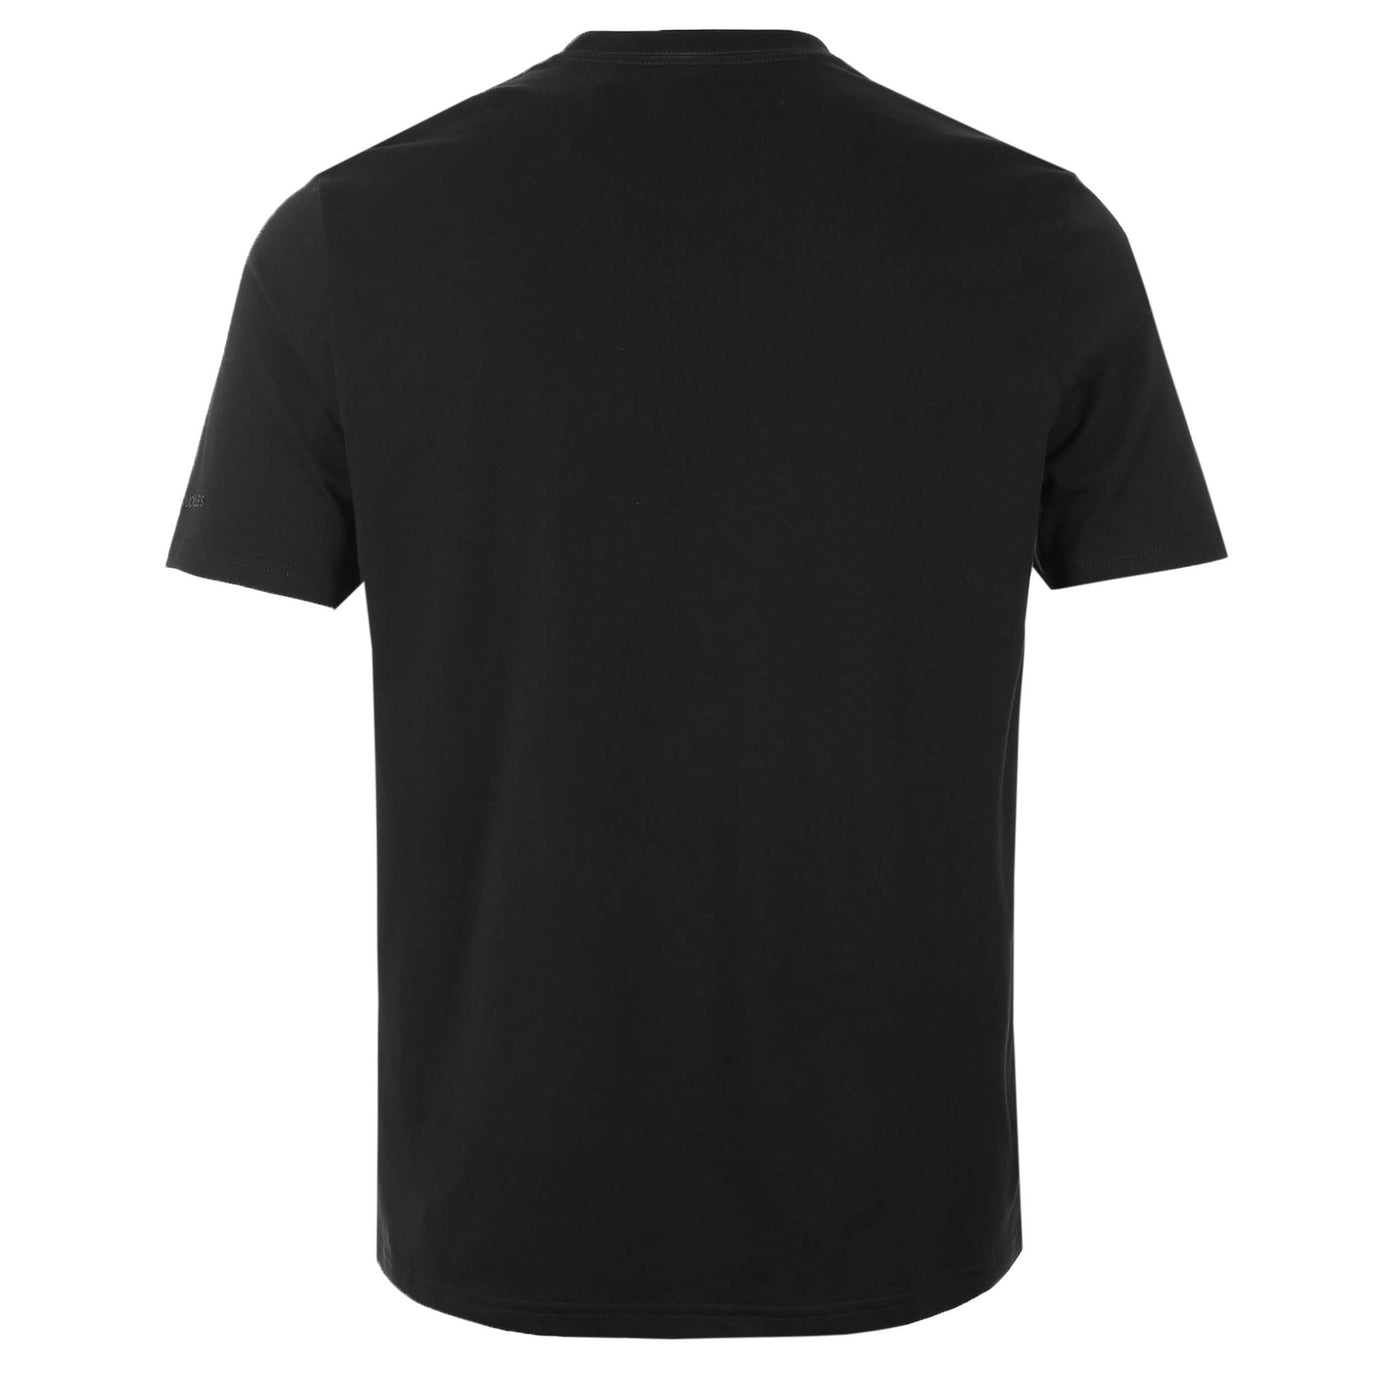 Moose Knuckles Satellite T Shirt in Black Back